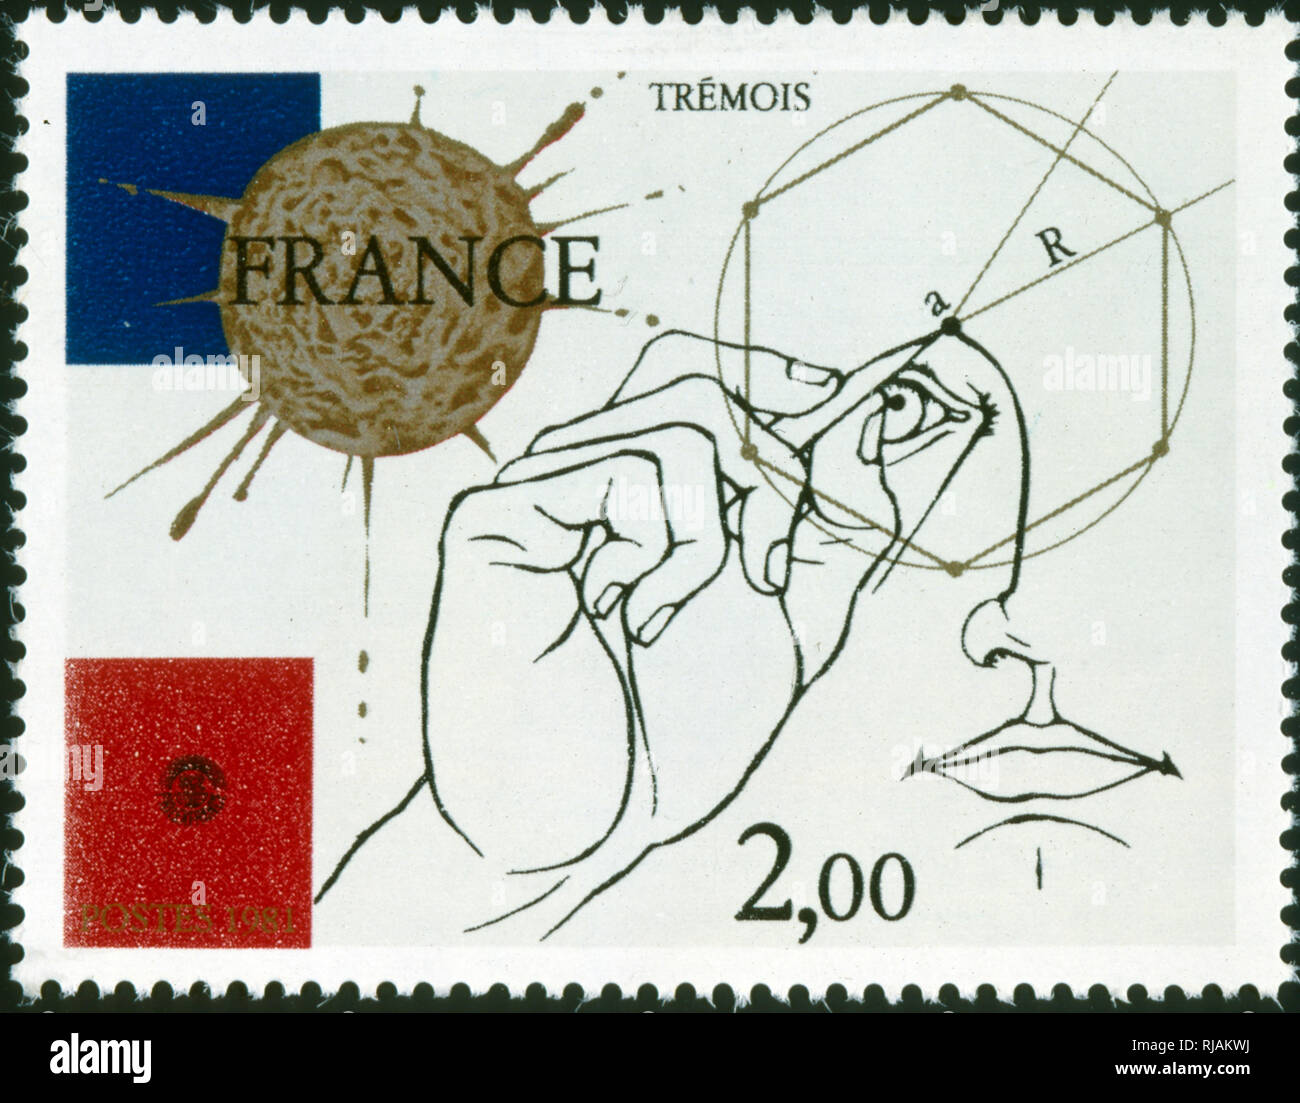 Französische Briefmarke zum Gedenken an Pierre-Yves Tremois (8. Januar 1921 in Paris geboren), ein französischer Künstler und Bildhauer. Er ist für eindrucksvolle Werke zeichnen in gleichen Anteilen auf den Surrealismus und Wissenschaft Abbildung bekannt Stockfoto